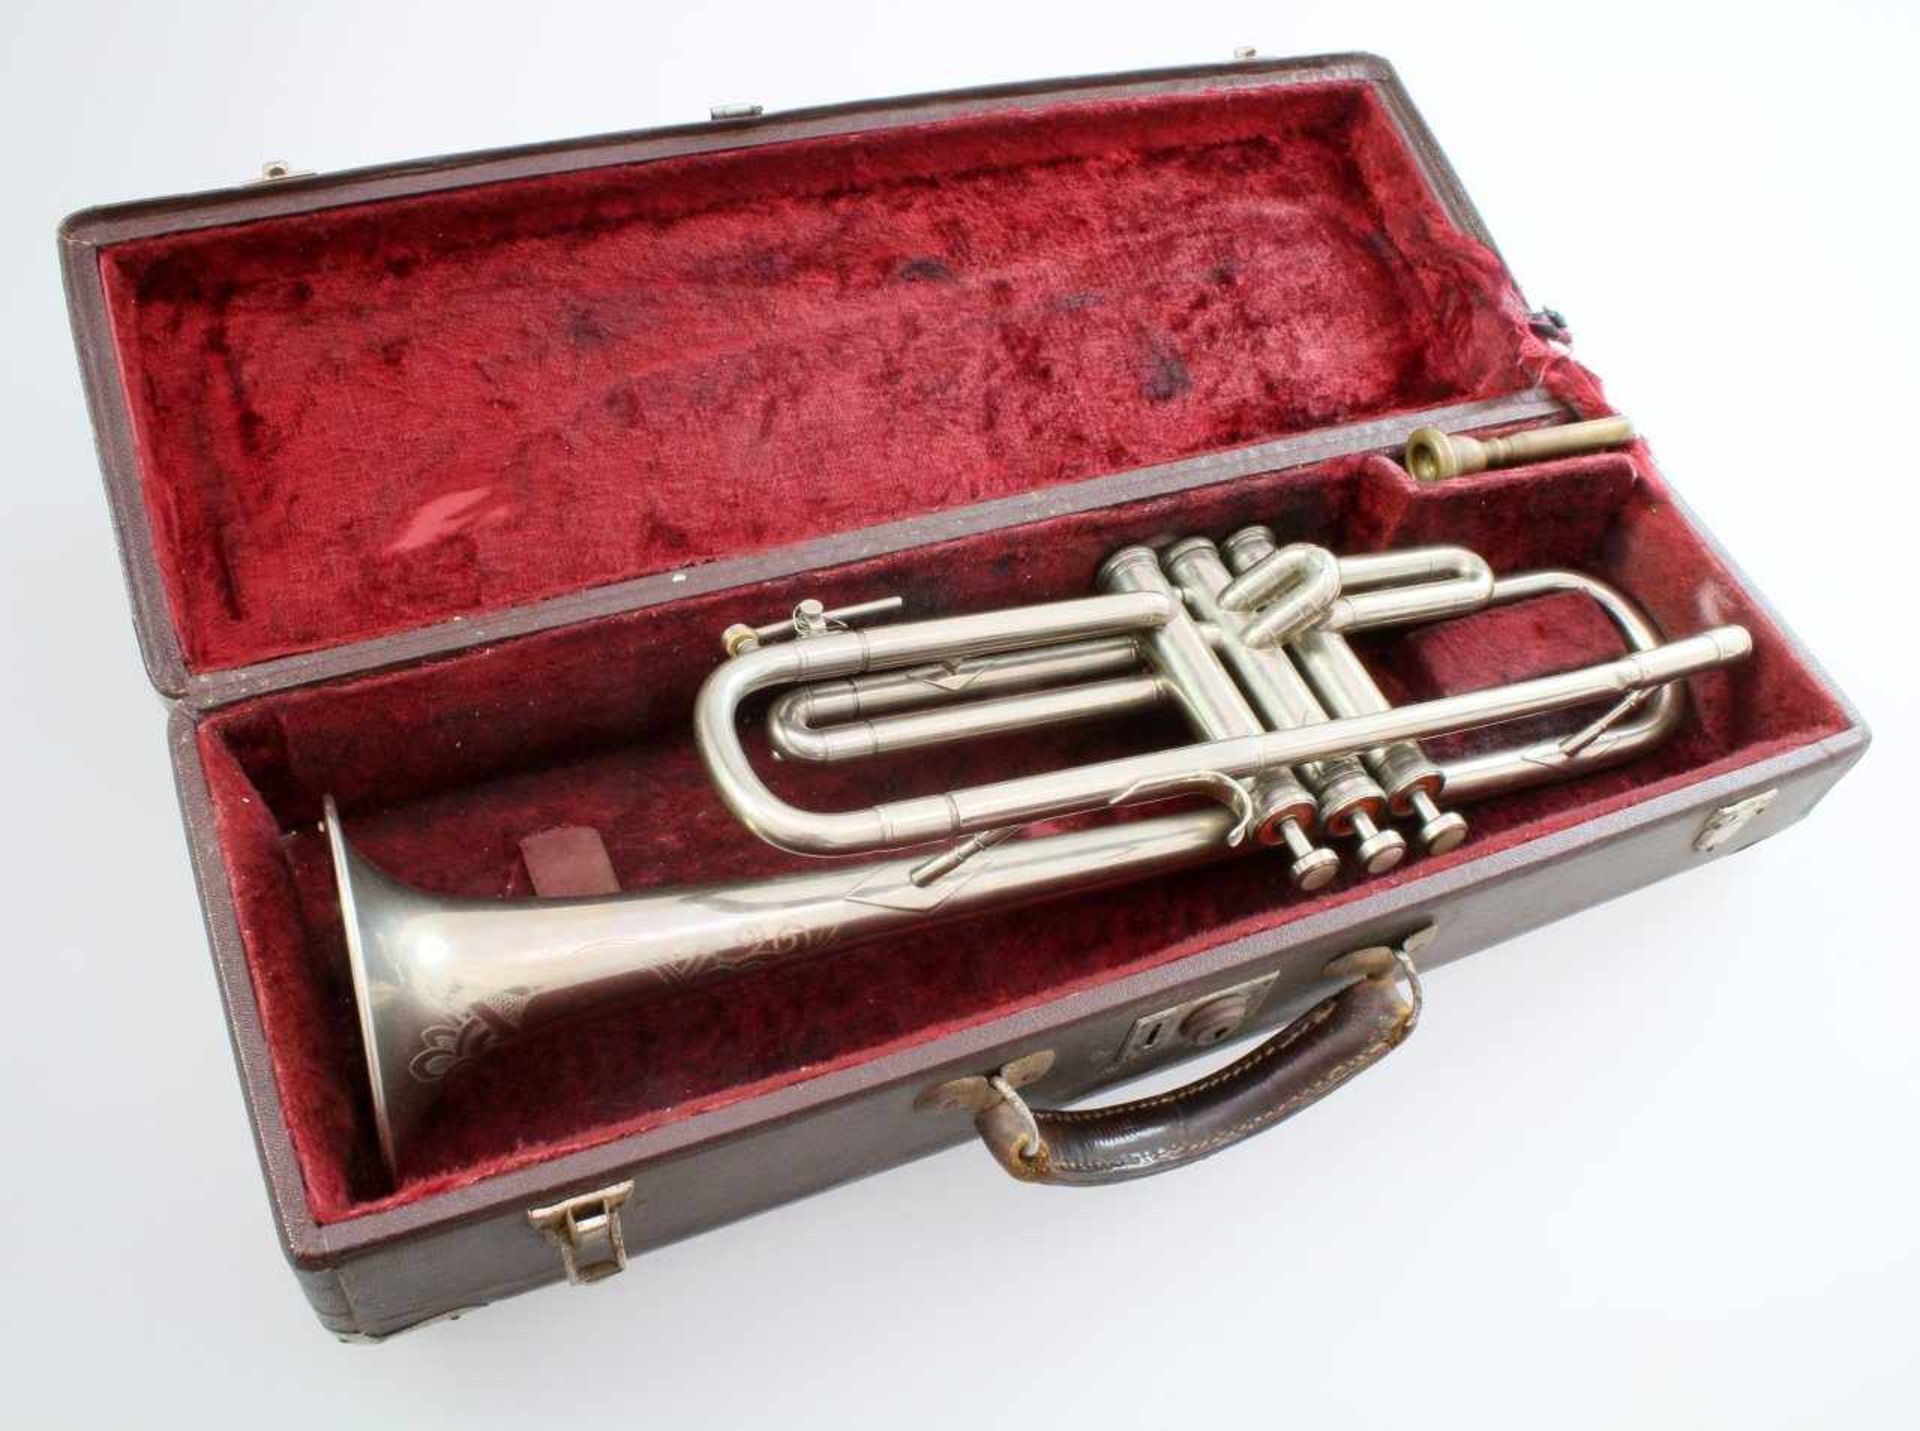 Trompete im Koffer Vernickelter Korpus, drei Ventile, Wasserklappe, gemarkt "RM" und nummeriert " - Bild 5 aus 6